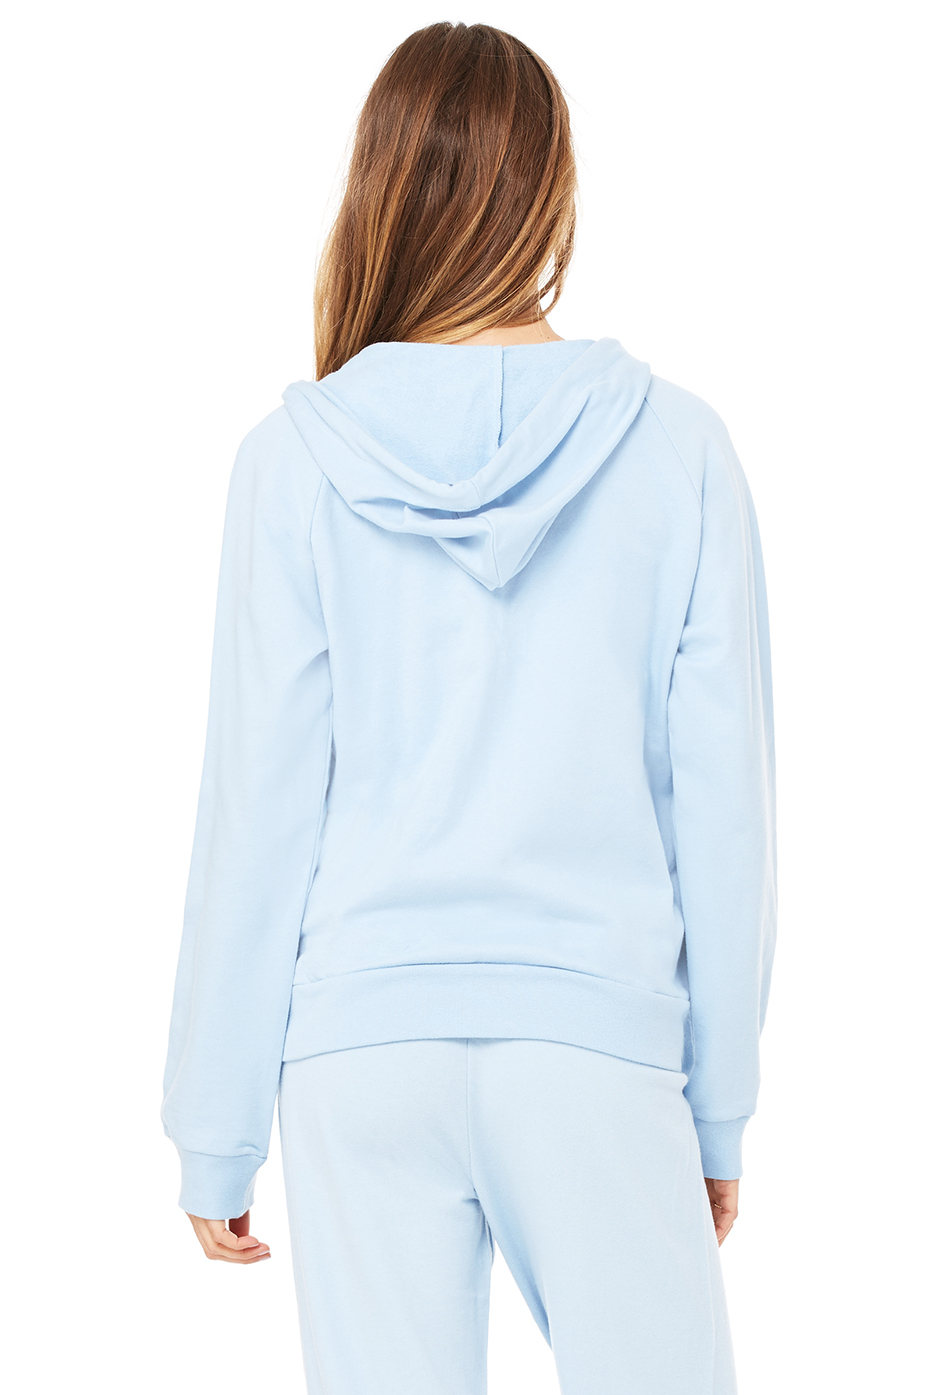 Women's Fleece Full-Zip Raglan Hoodie | Bella-Canvas